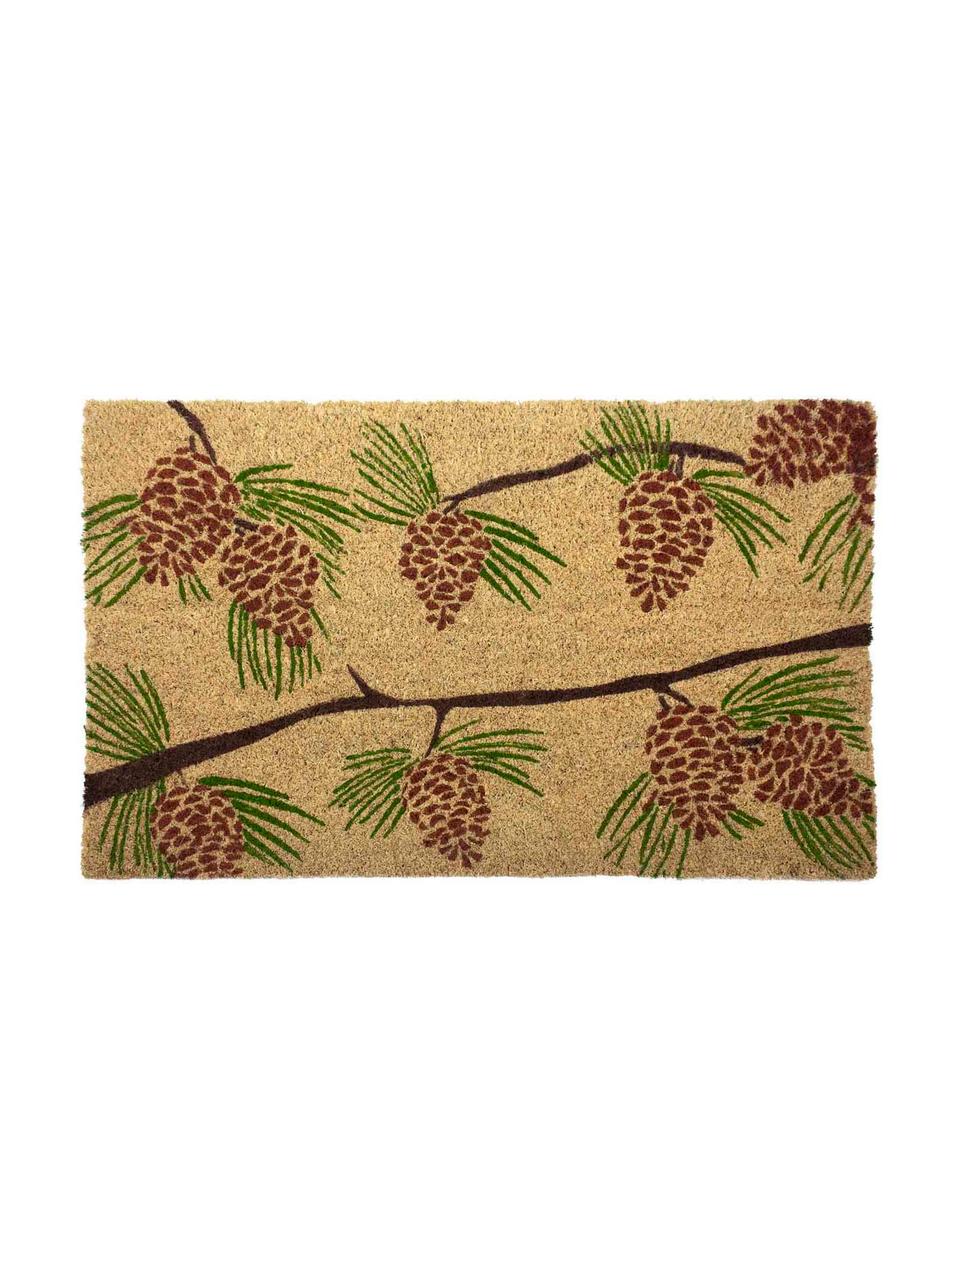 Fußmatte Pine Cones, Oberseite: Kokosfasern, Unterseite: PVC, Beige, Grün, Rot, Braun, 43 x 70 cm